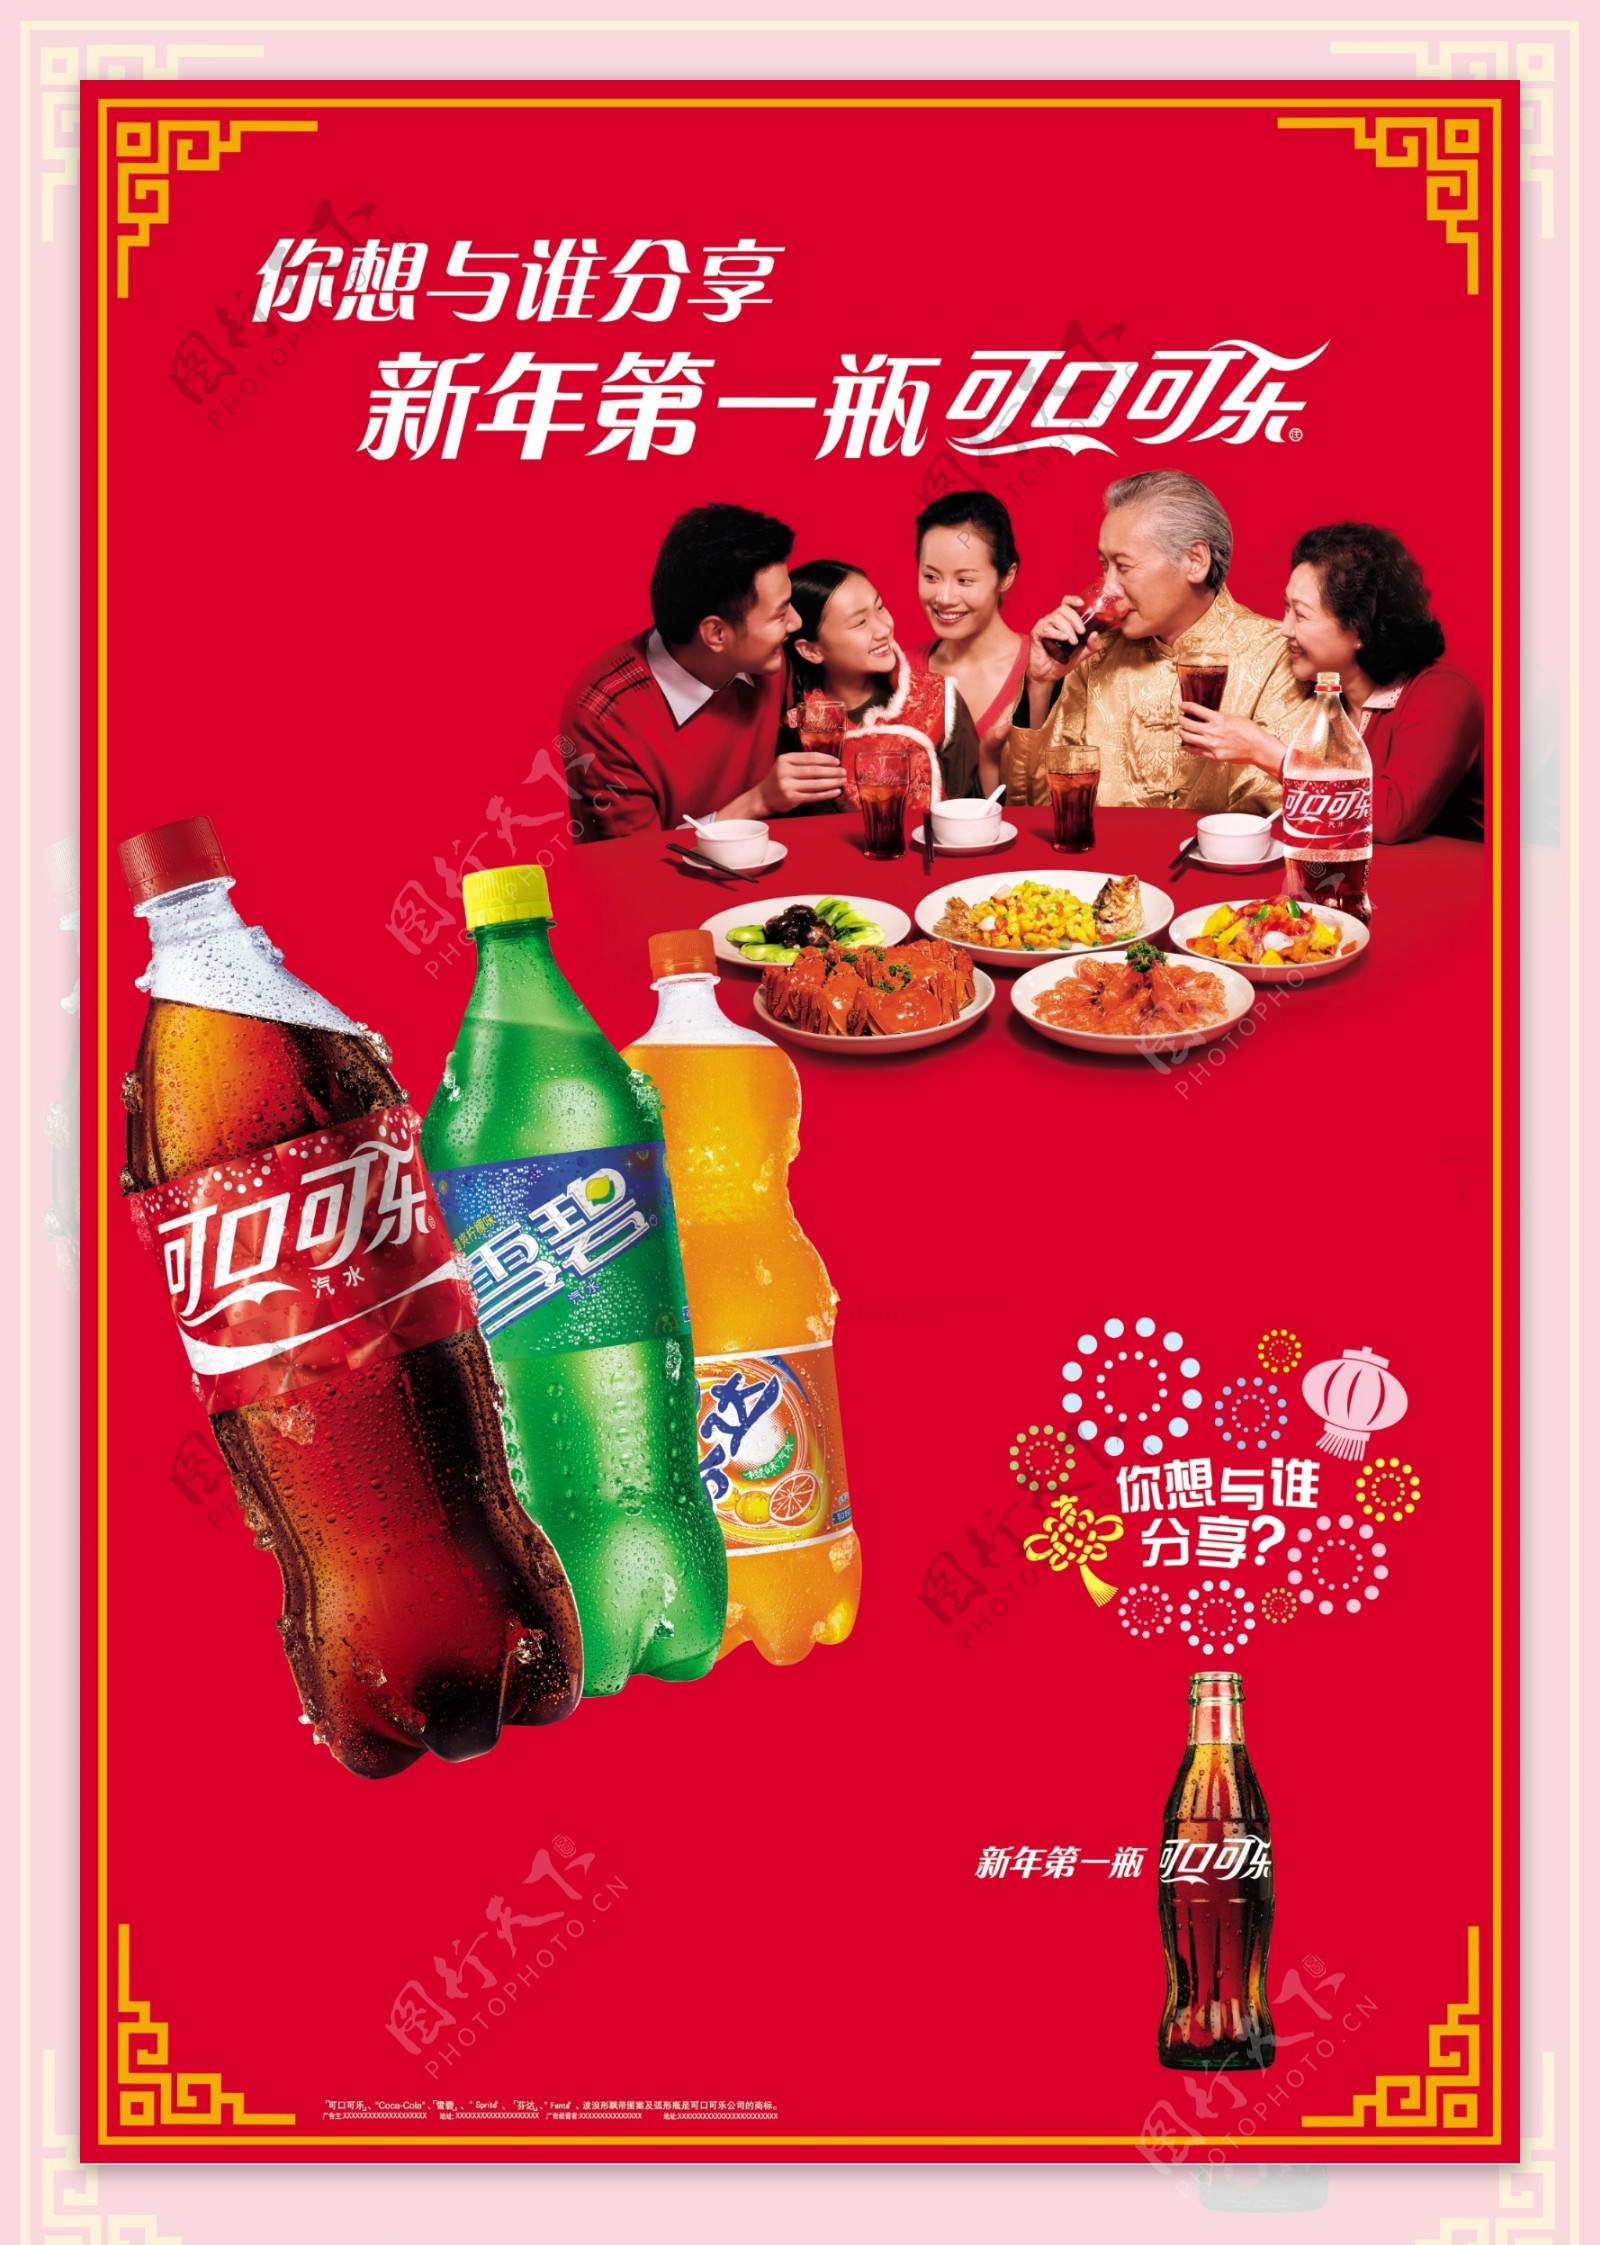 可口可乐新年分享广告图片